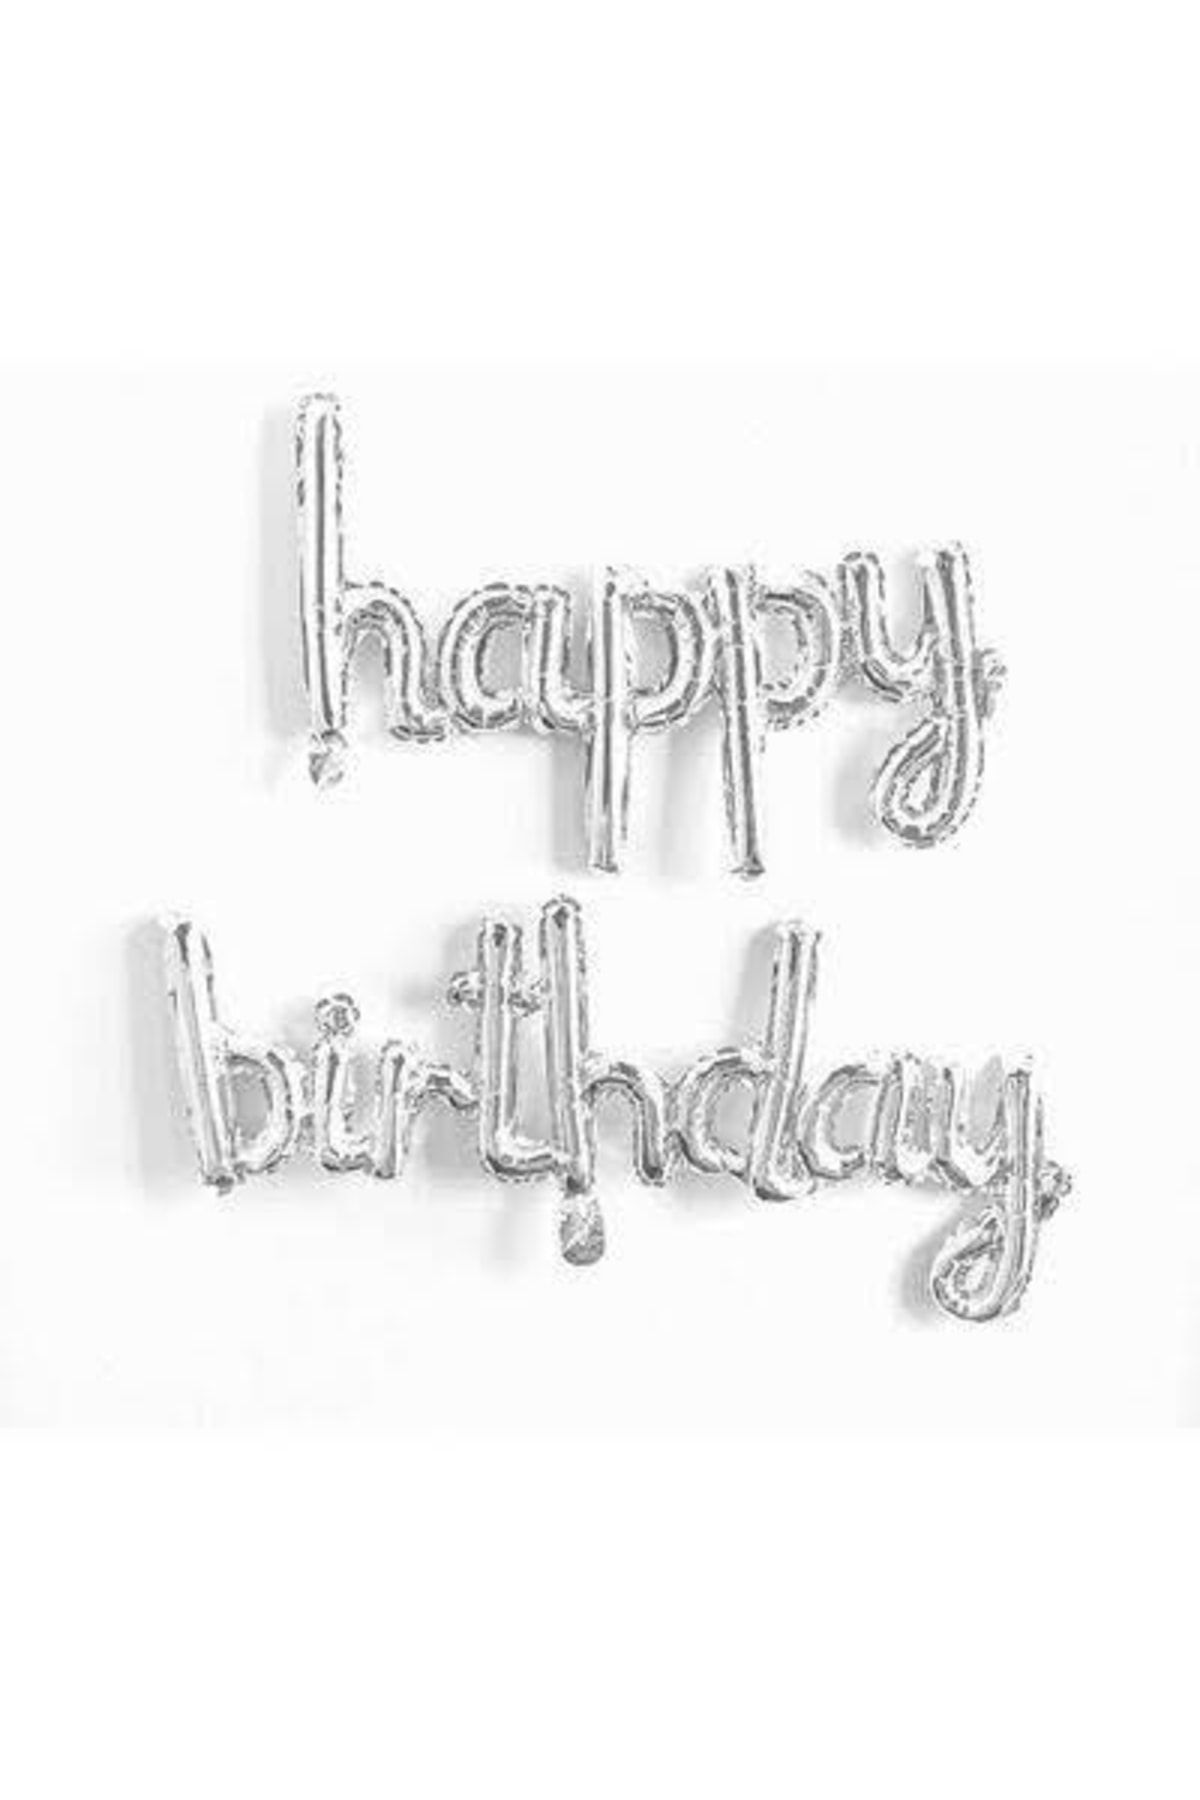 CAVAŞ sun hat Happy Birthday El Yazısı Gümüş Renk Folyo Balon Set